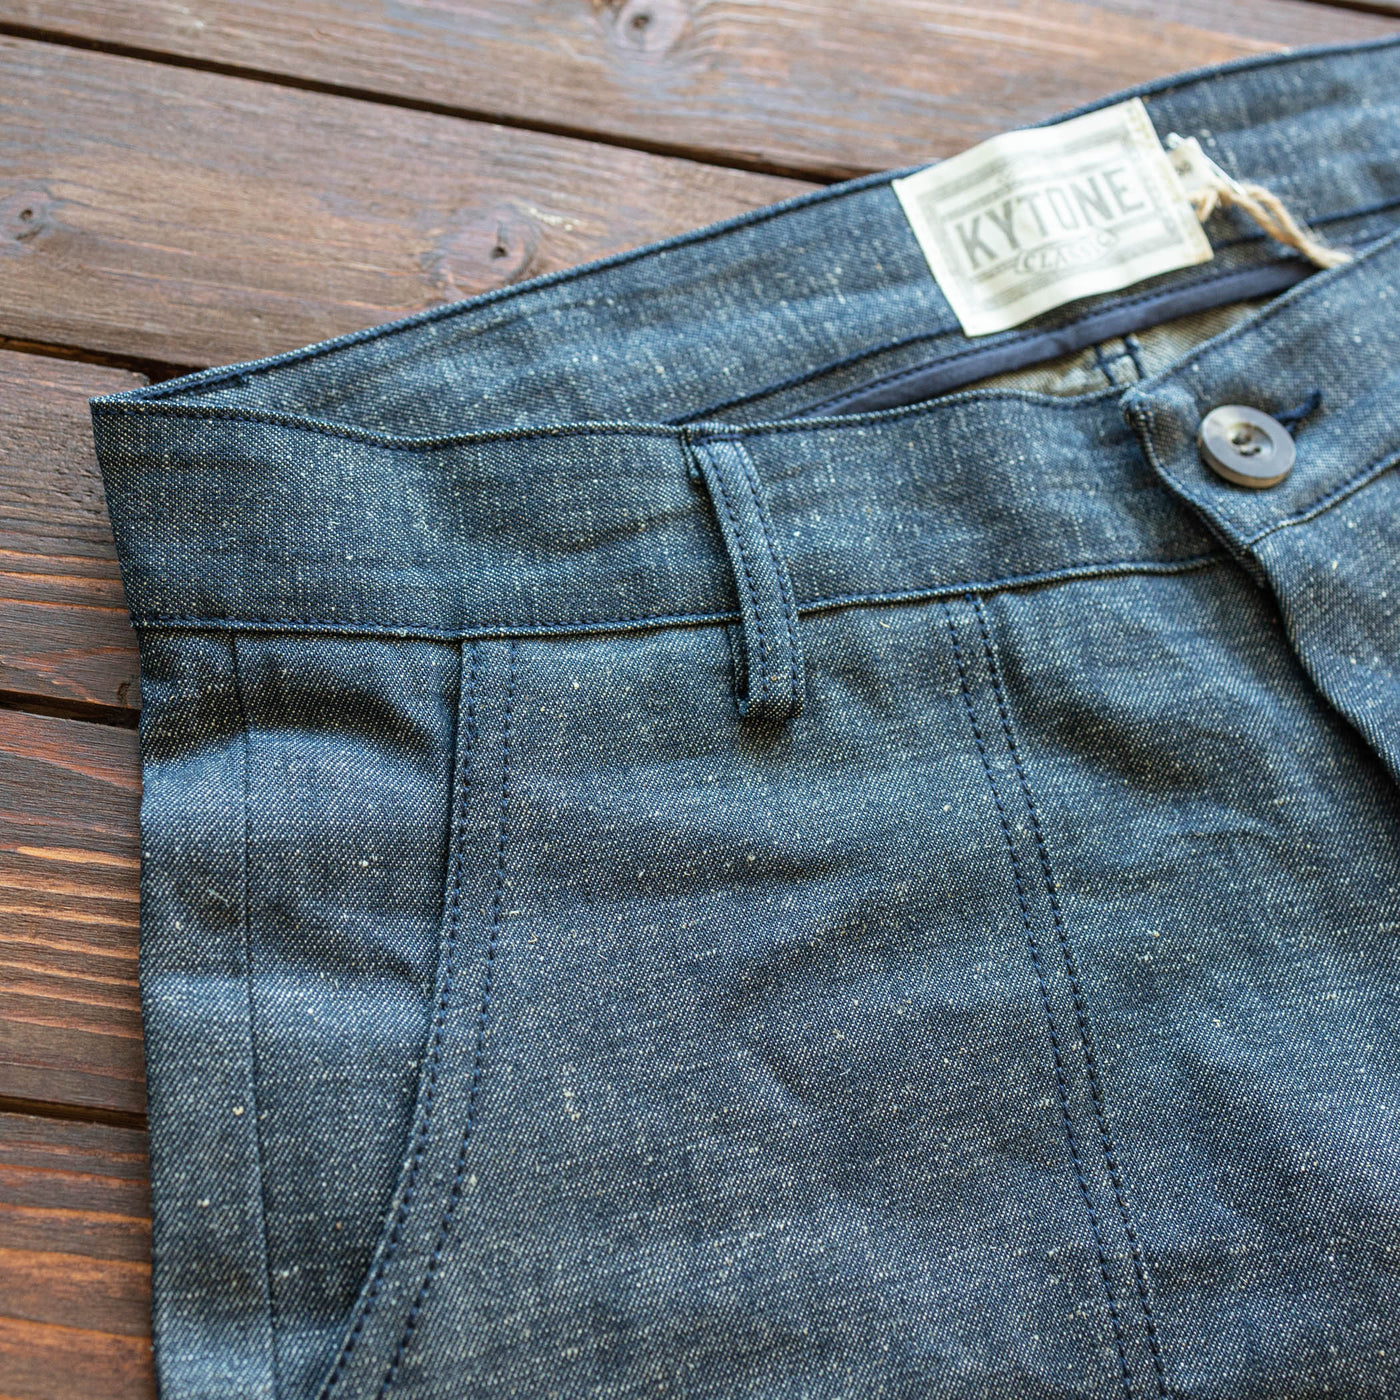 Kytone - Denim Shorts - Blå selvedge